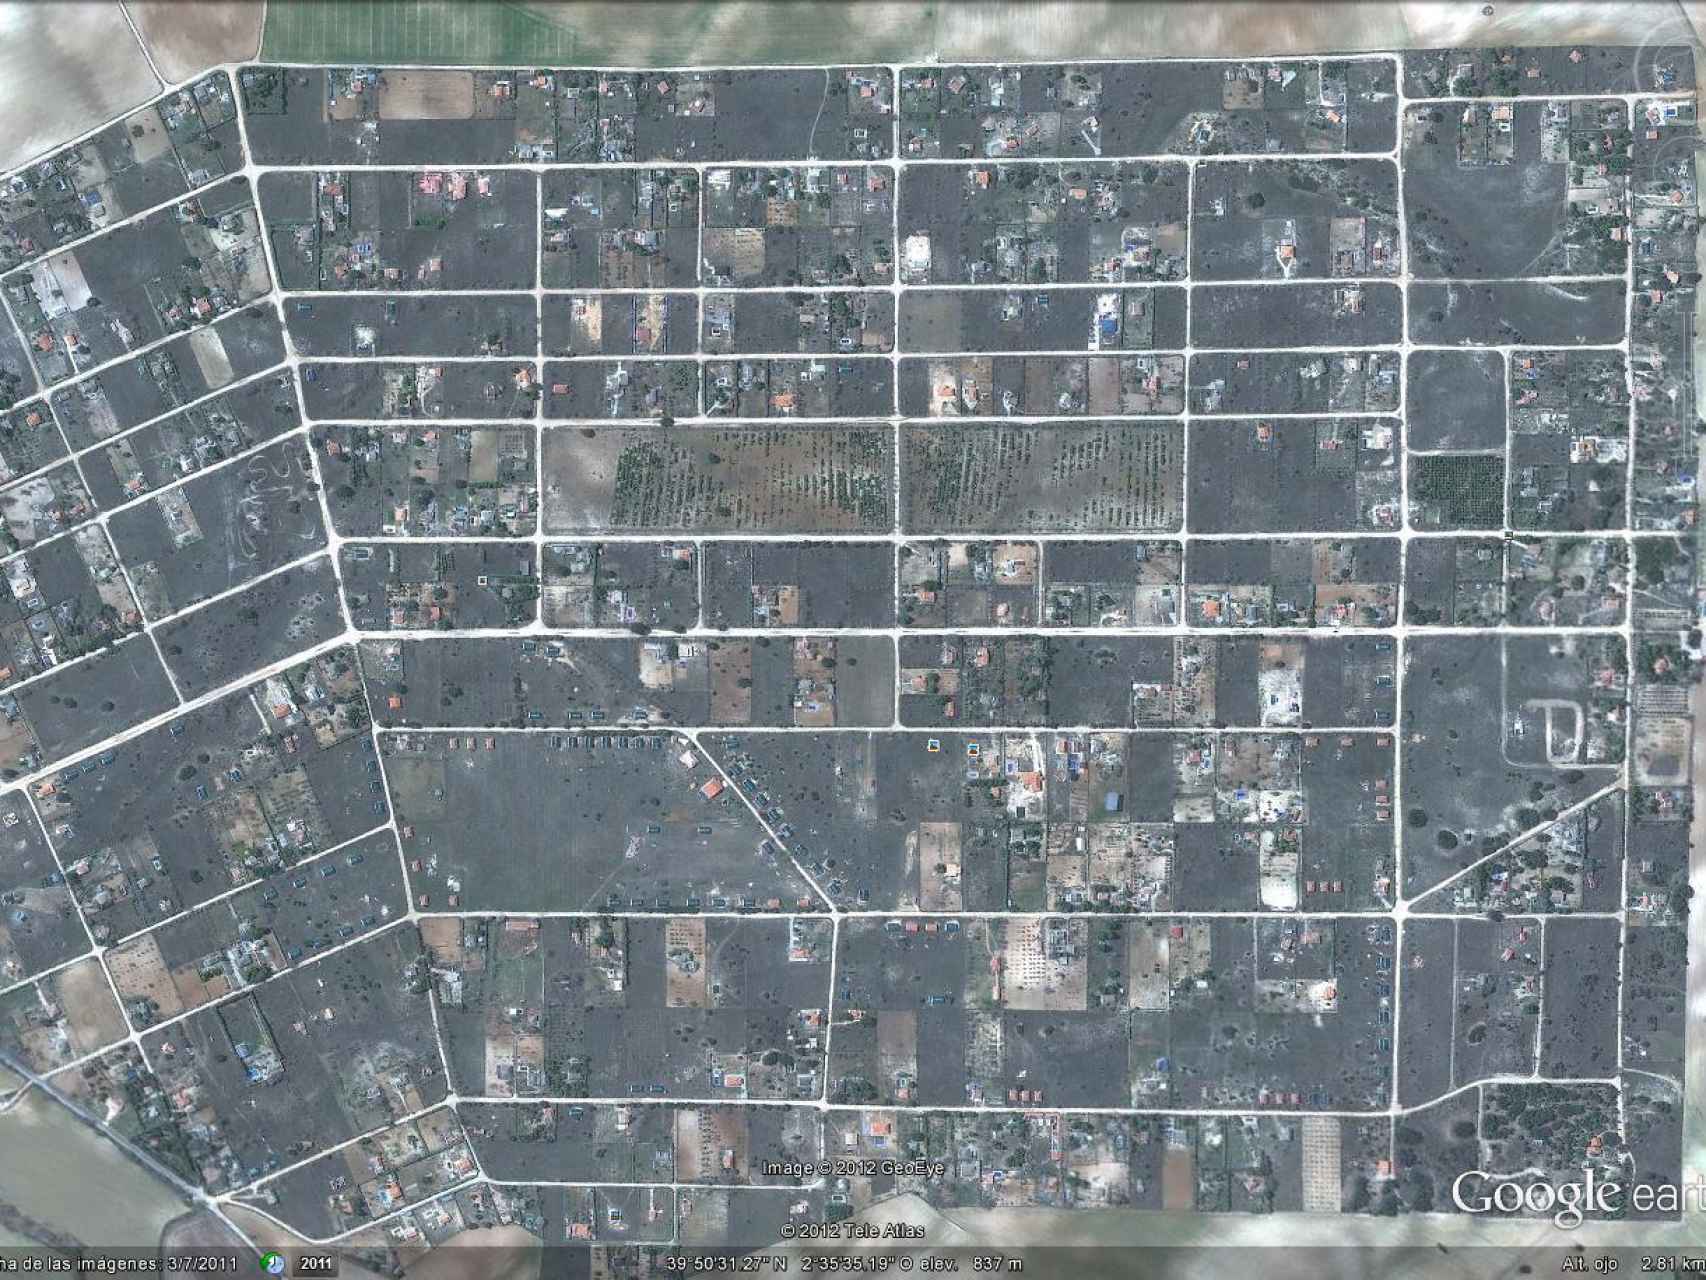 Imagen aérea de la urbanización. El área es mucho más grande que la del propio pueblo.